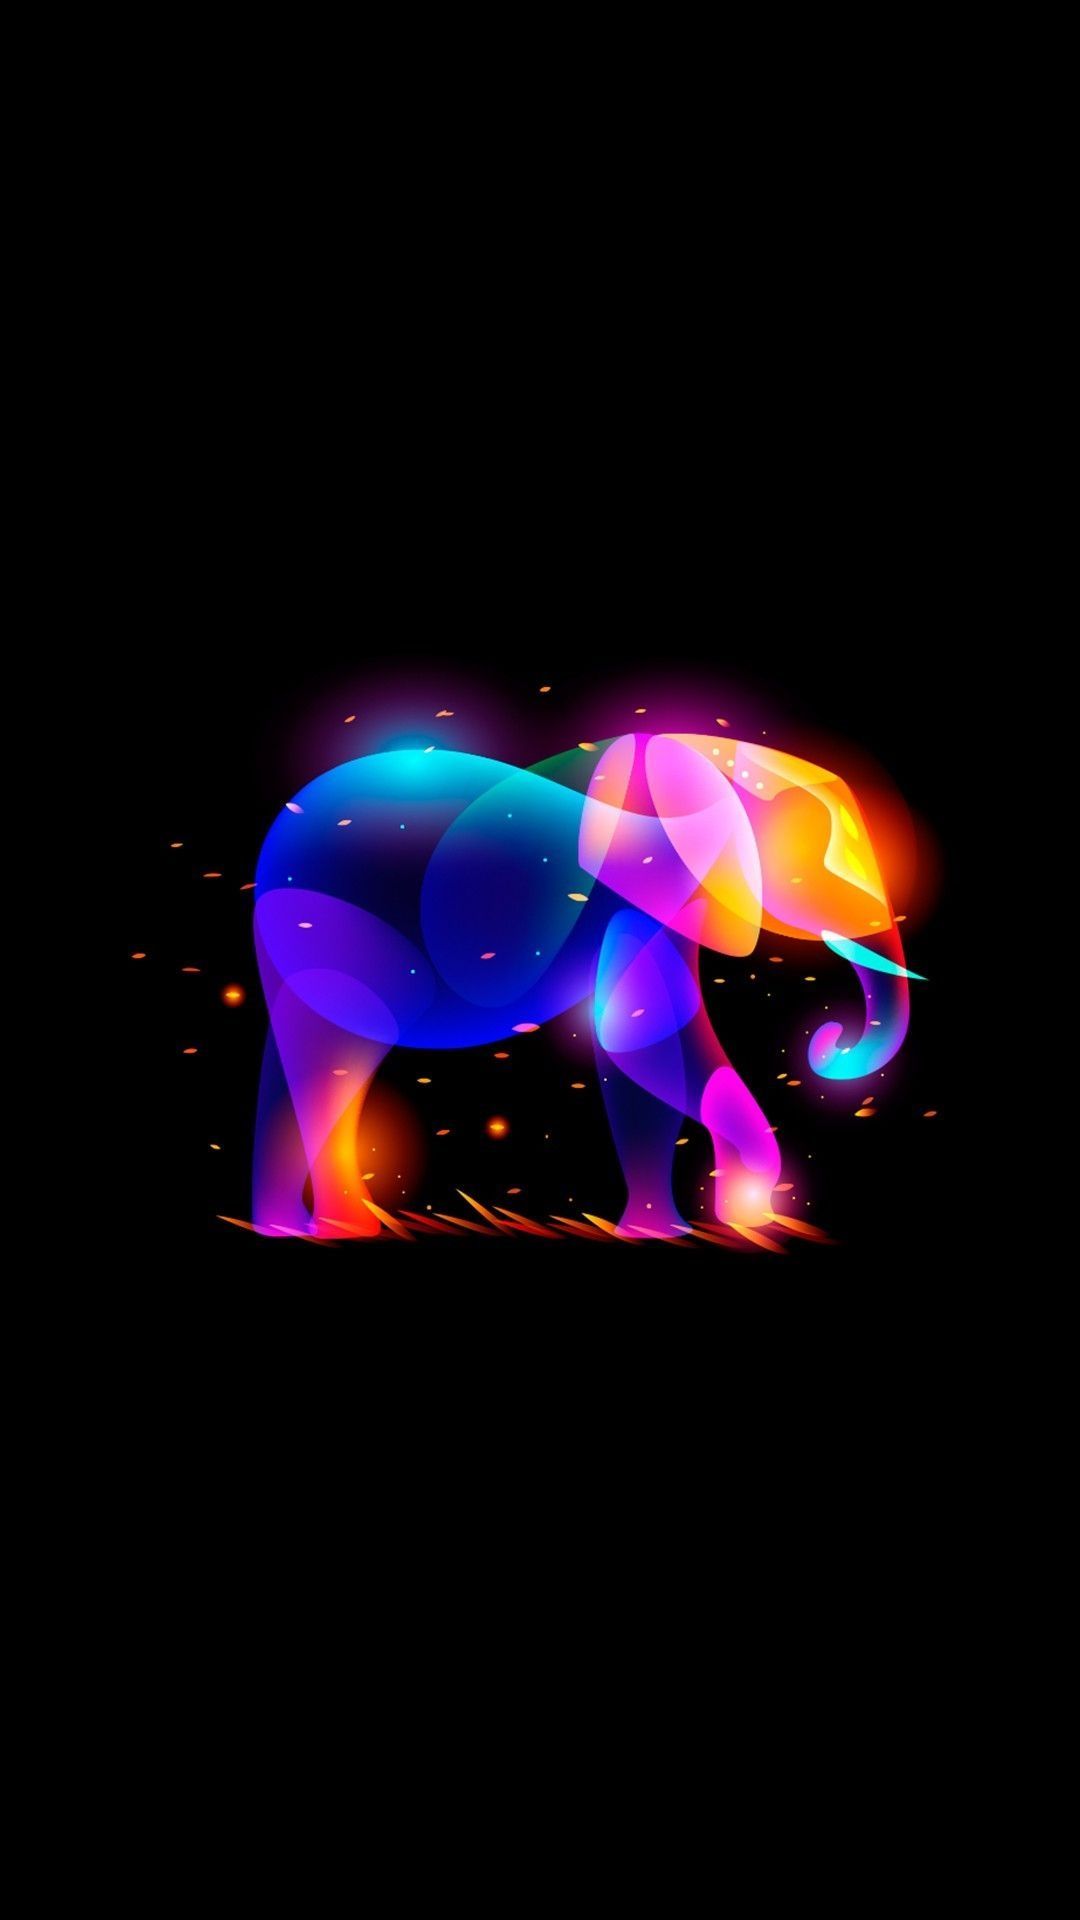  Elefant Hintergrundbild 1080x1920. Elephant iPhone Background